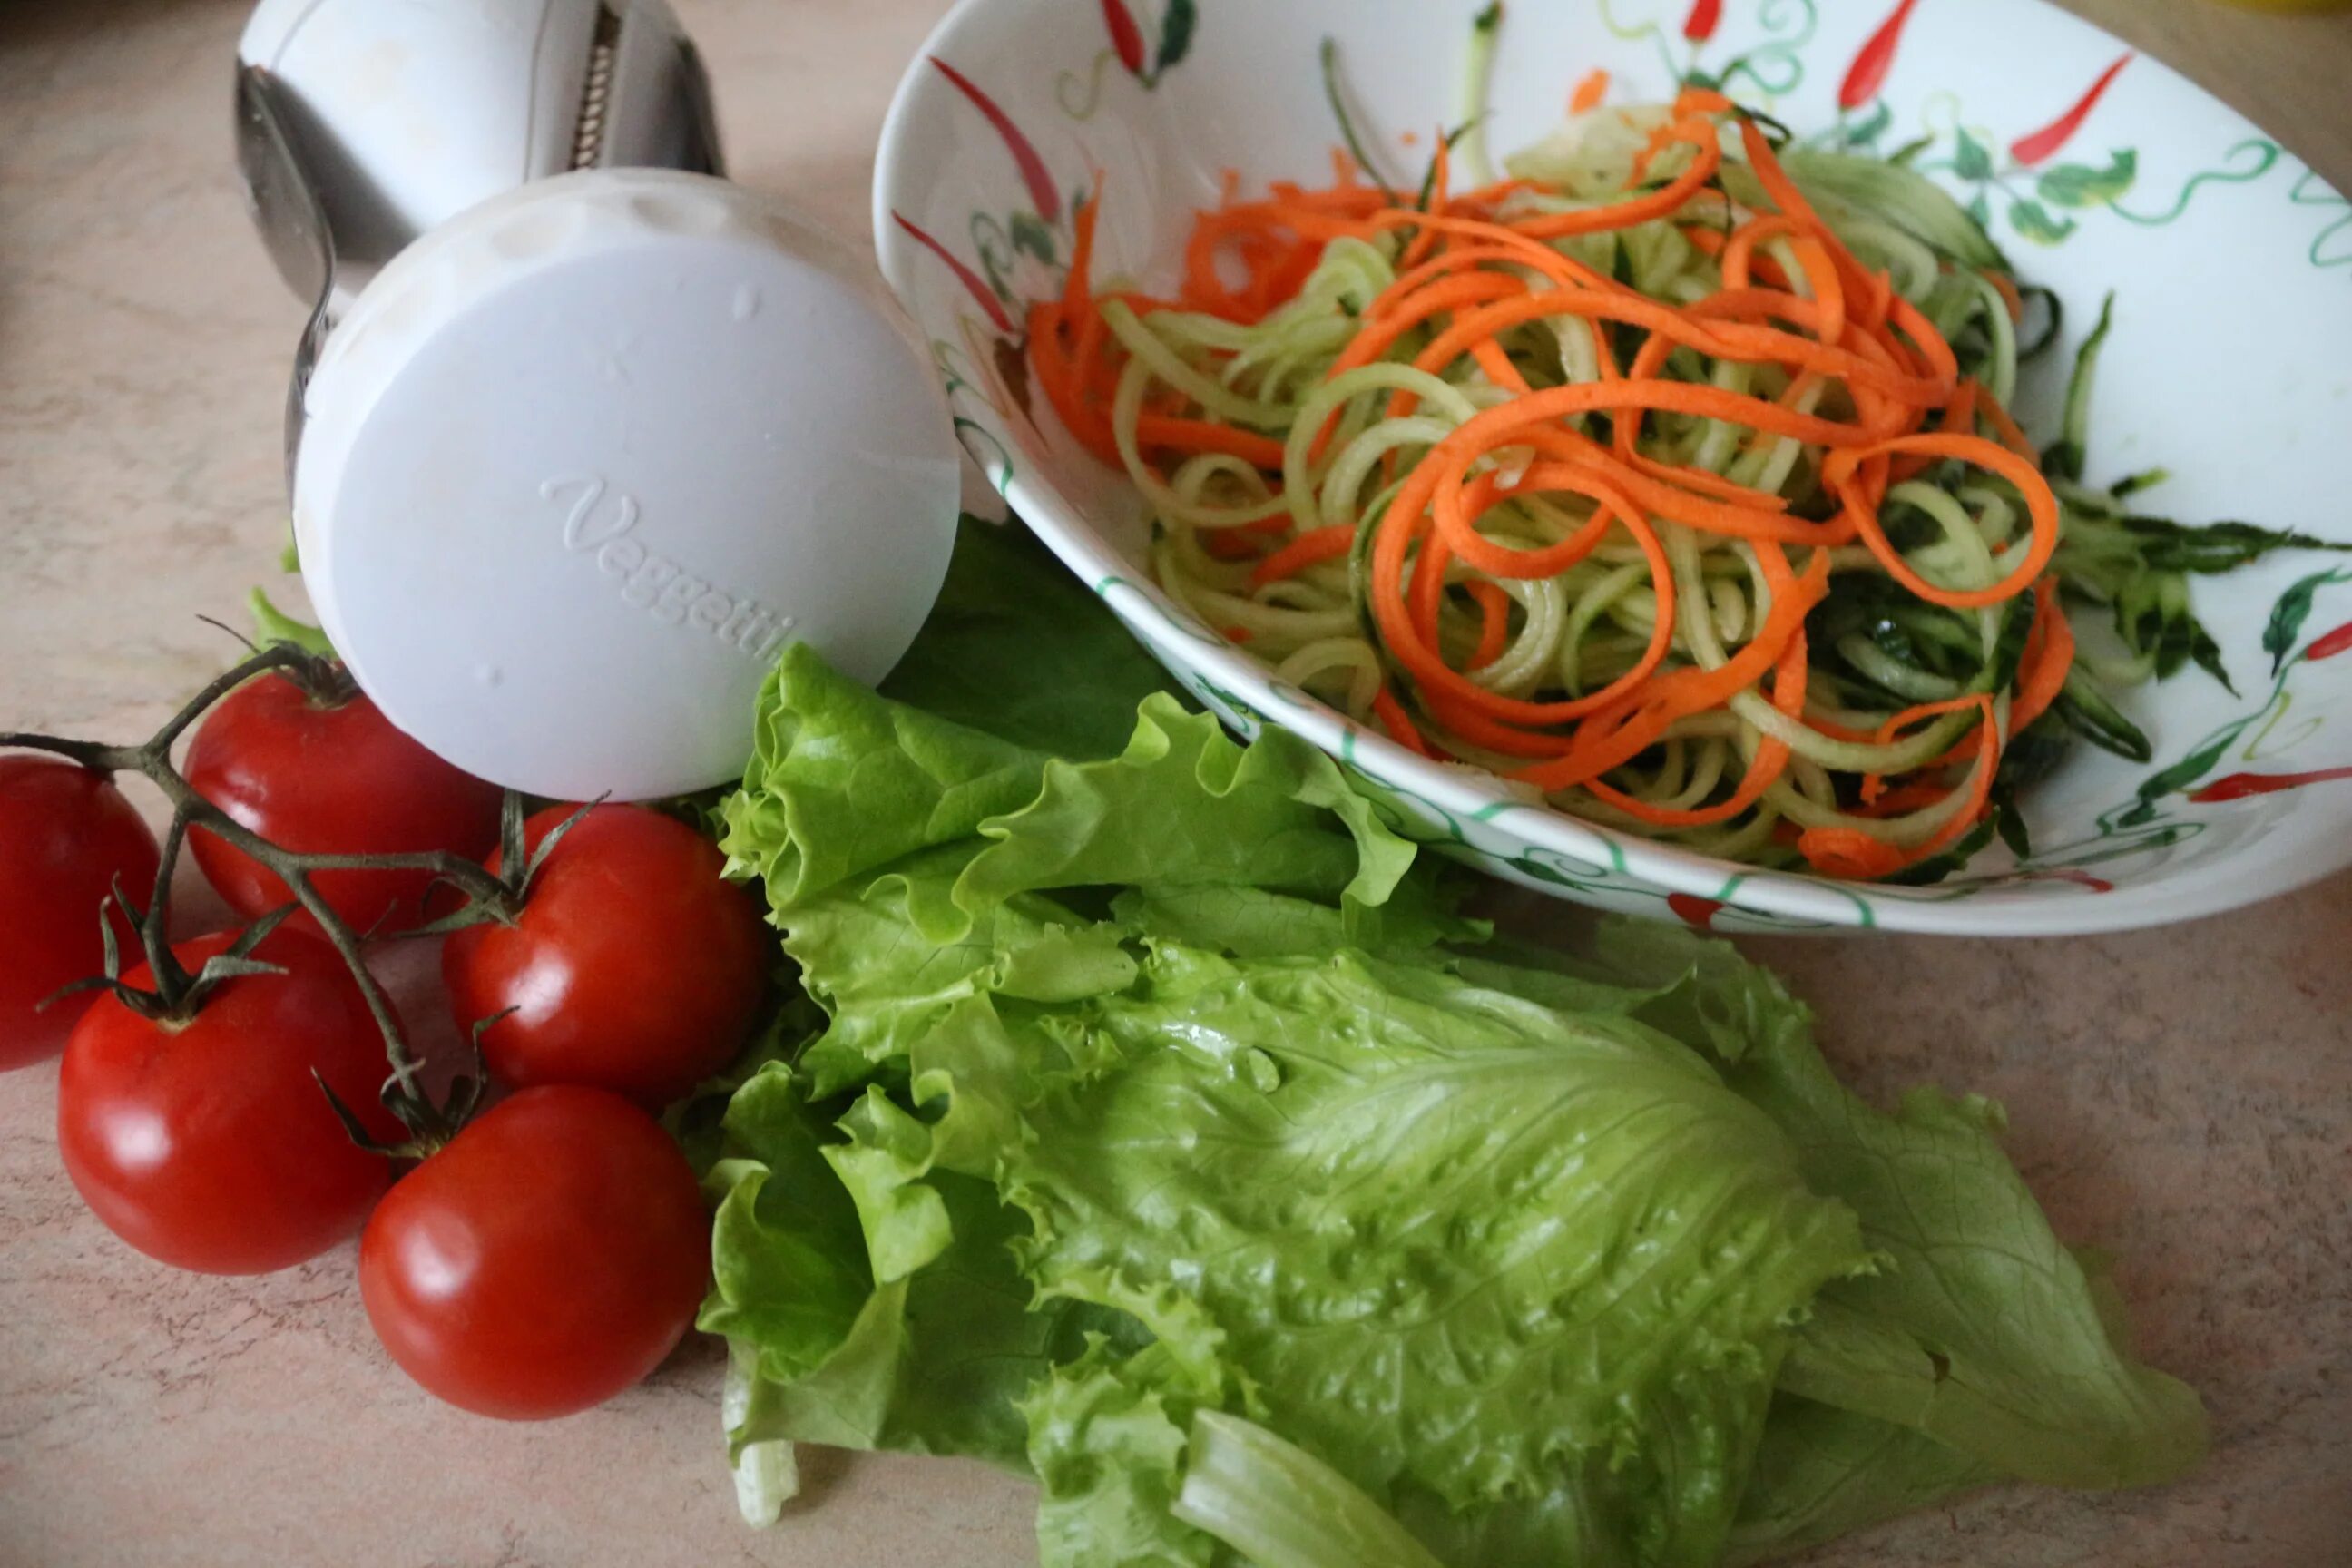 Рецепт заправки для салата из овощей. Цитрусовая заправка для салата. Овощной салат с цитрусовой заправкой. Зеленый салат с цитрусовой заправкой. Самодельный цитрусовая заправка для овощных салатов.